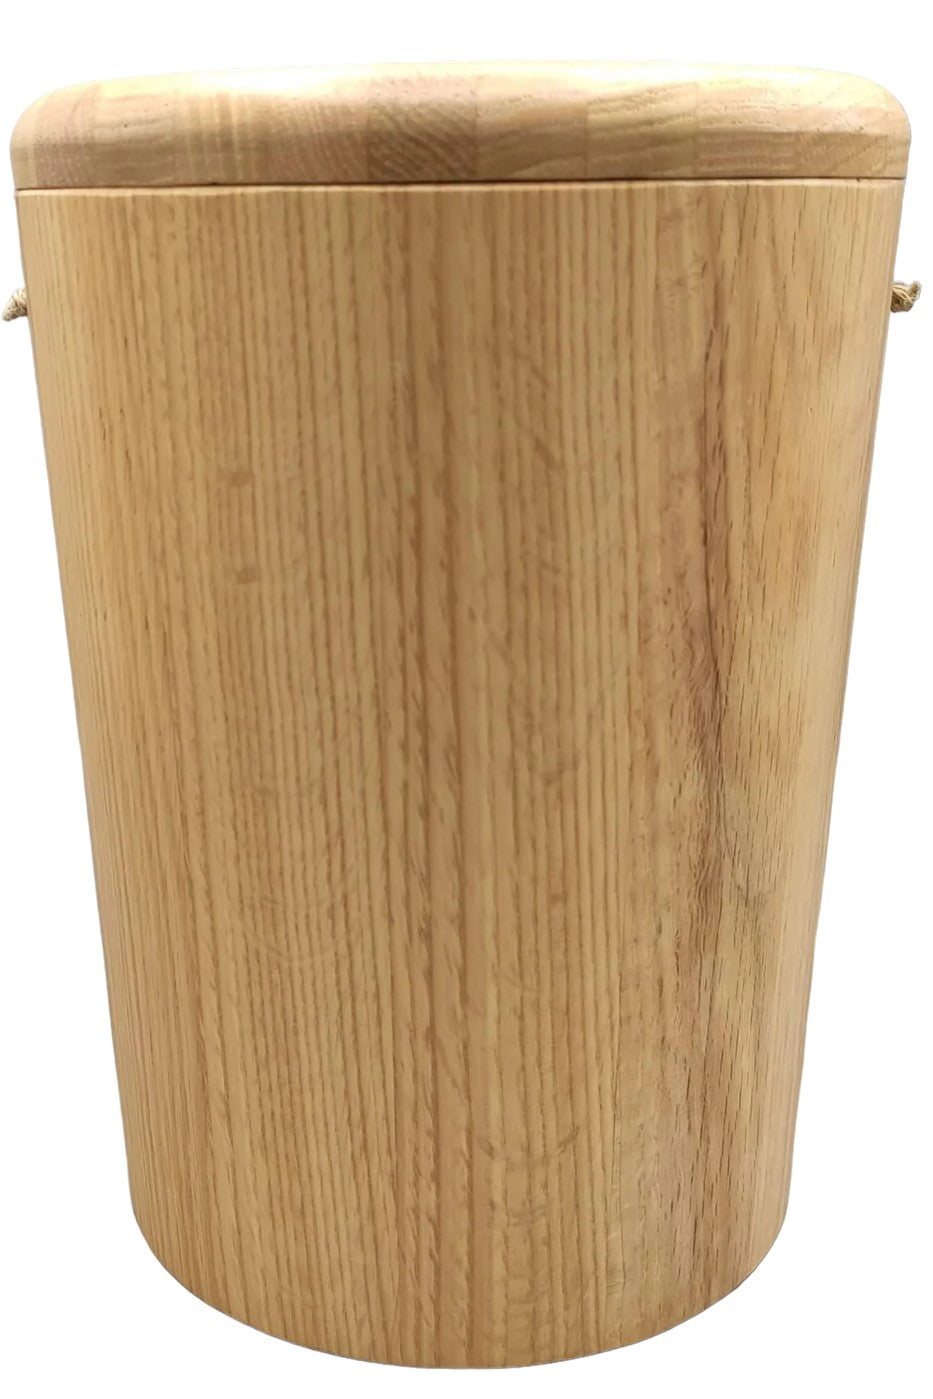 Holzurne aus Eiche moderne Form